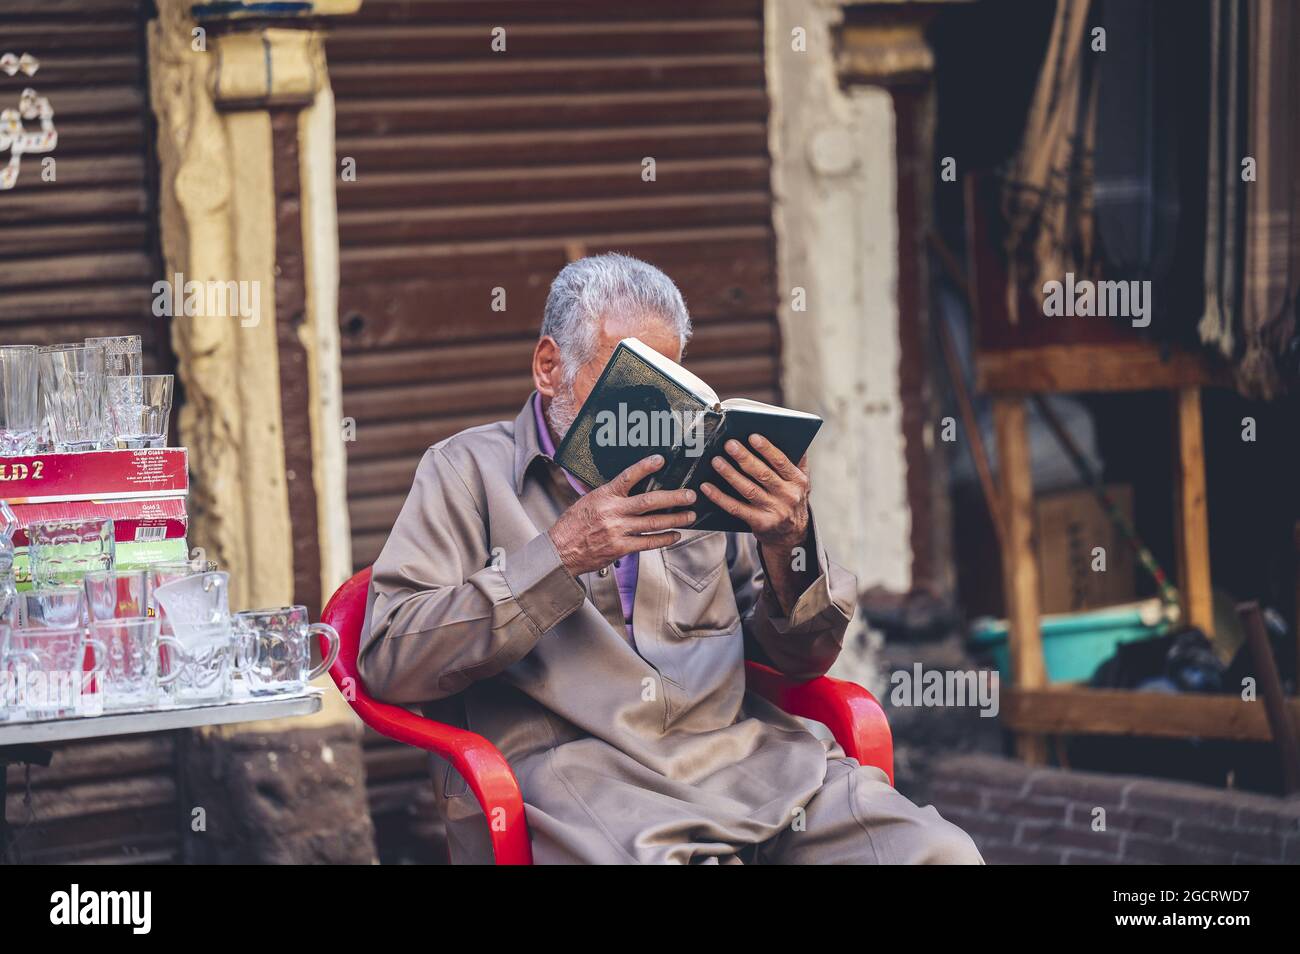 CAIRO, EGITTO - 02 maggio 2021: La cultura di strada tipica in Egitto con il popolo egiziano Foto Stock